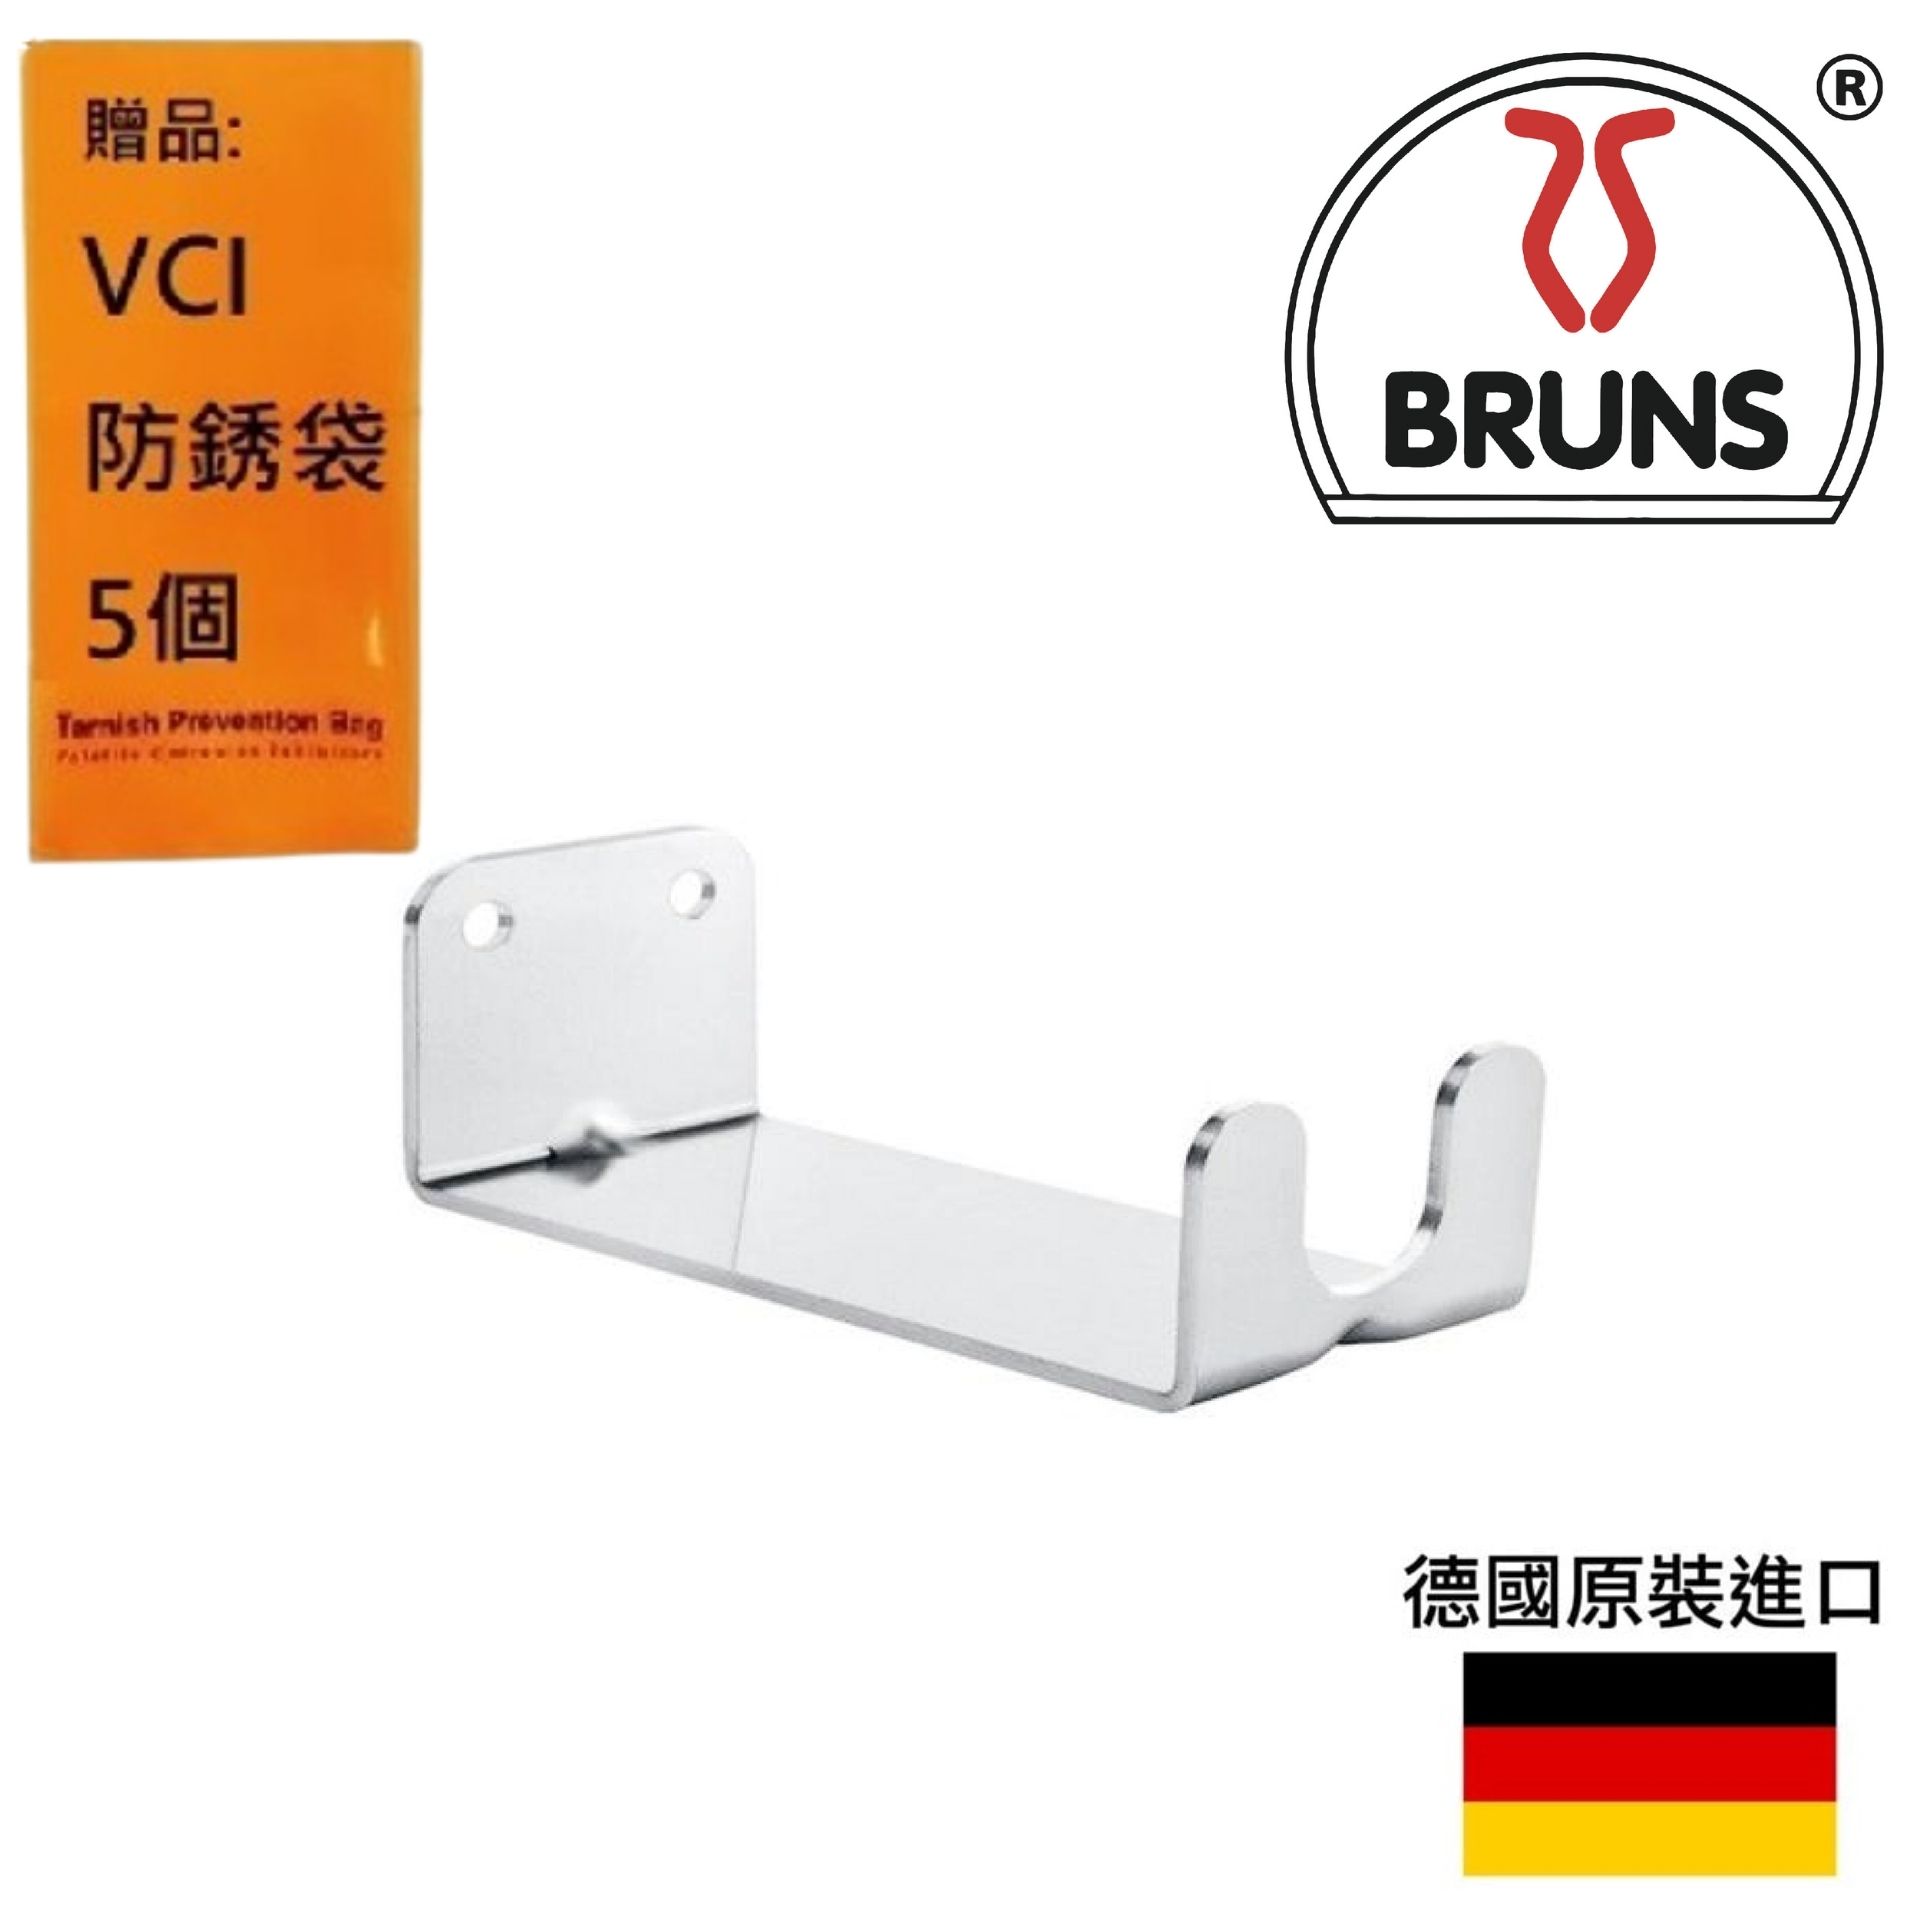 【Bruns】經典腳踏車收納掛架-FH 1 極簡造型, 空間充分利用